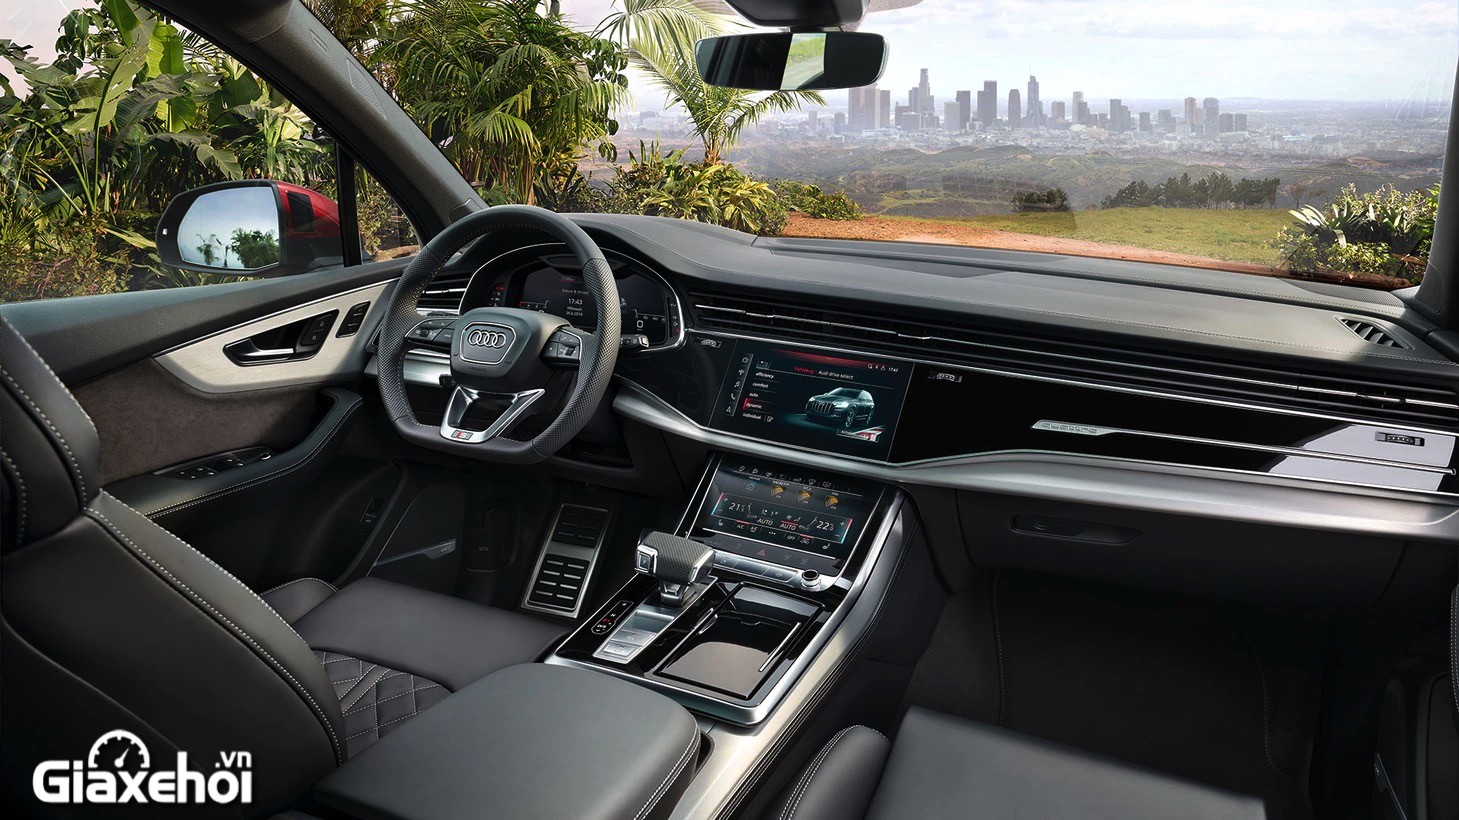 Nội thất của Audi Q7 sang trọng, cao cấp trong từng chi tiết đáng giá từng đồng của SUV thương hiệu Đức.